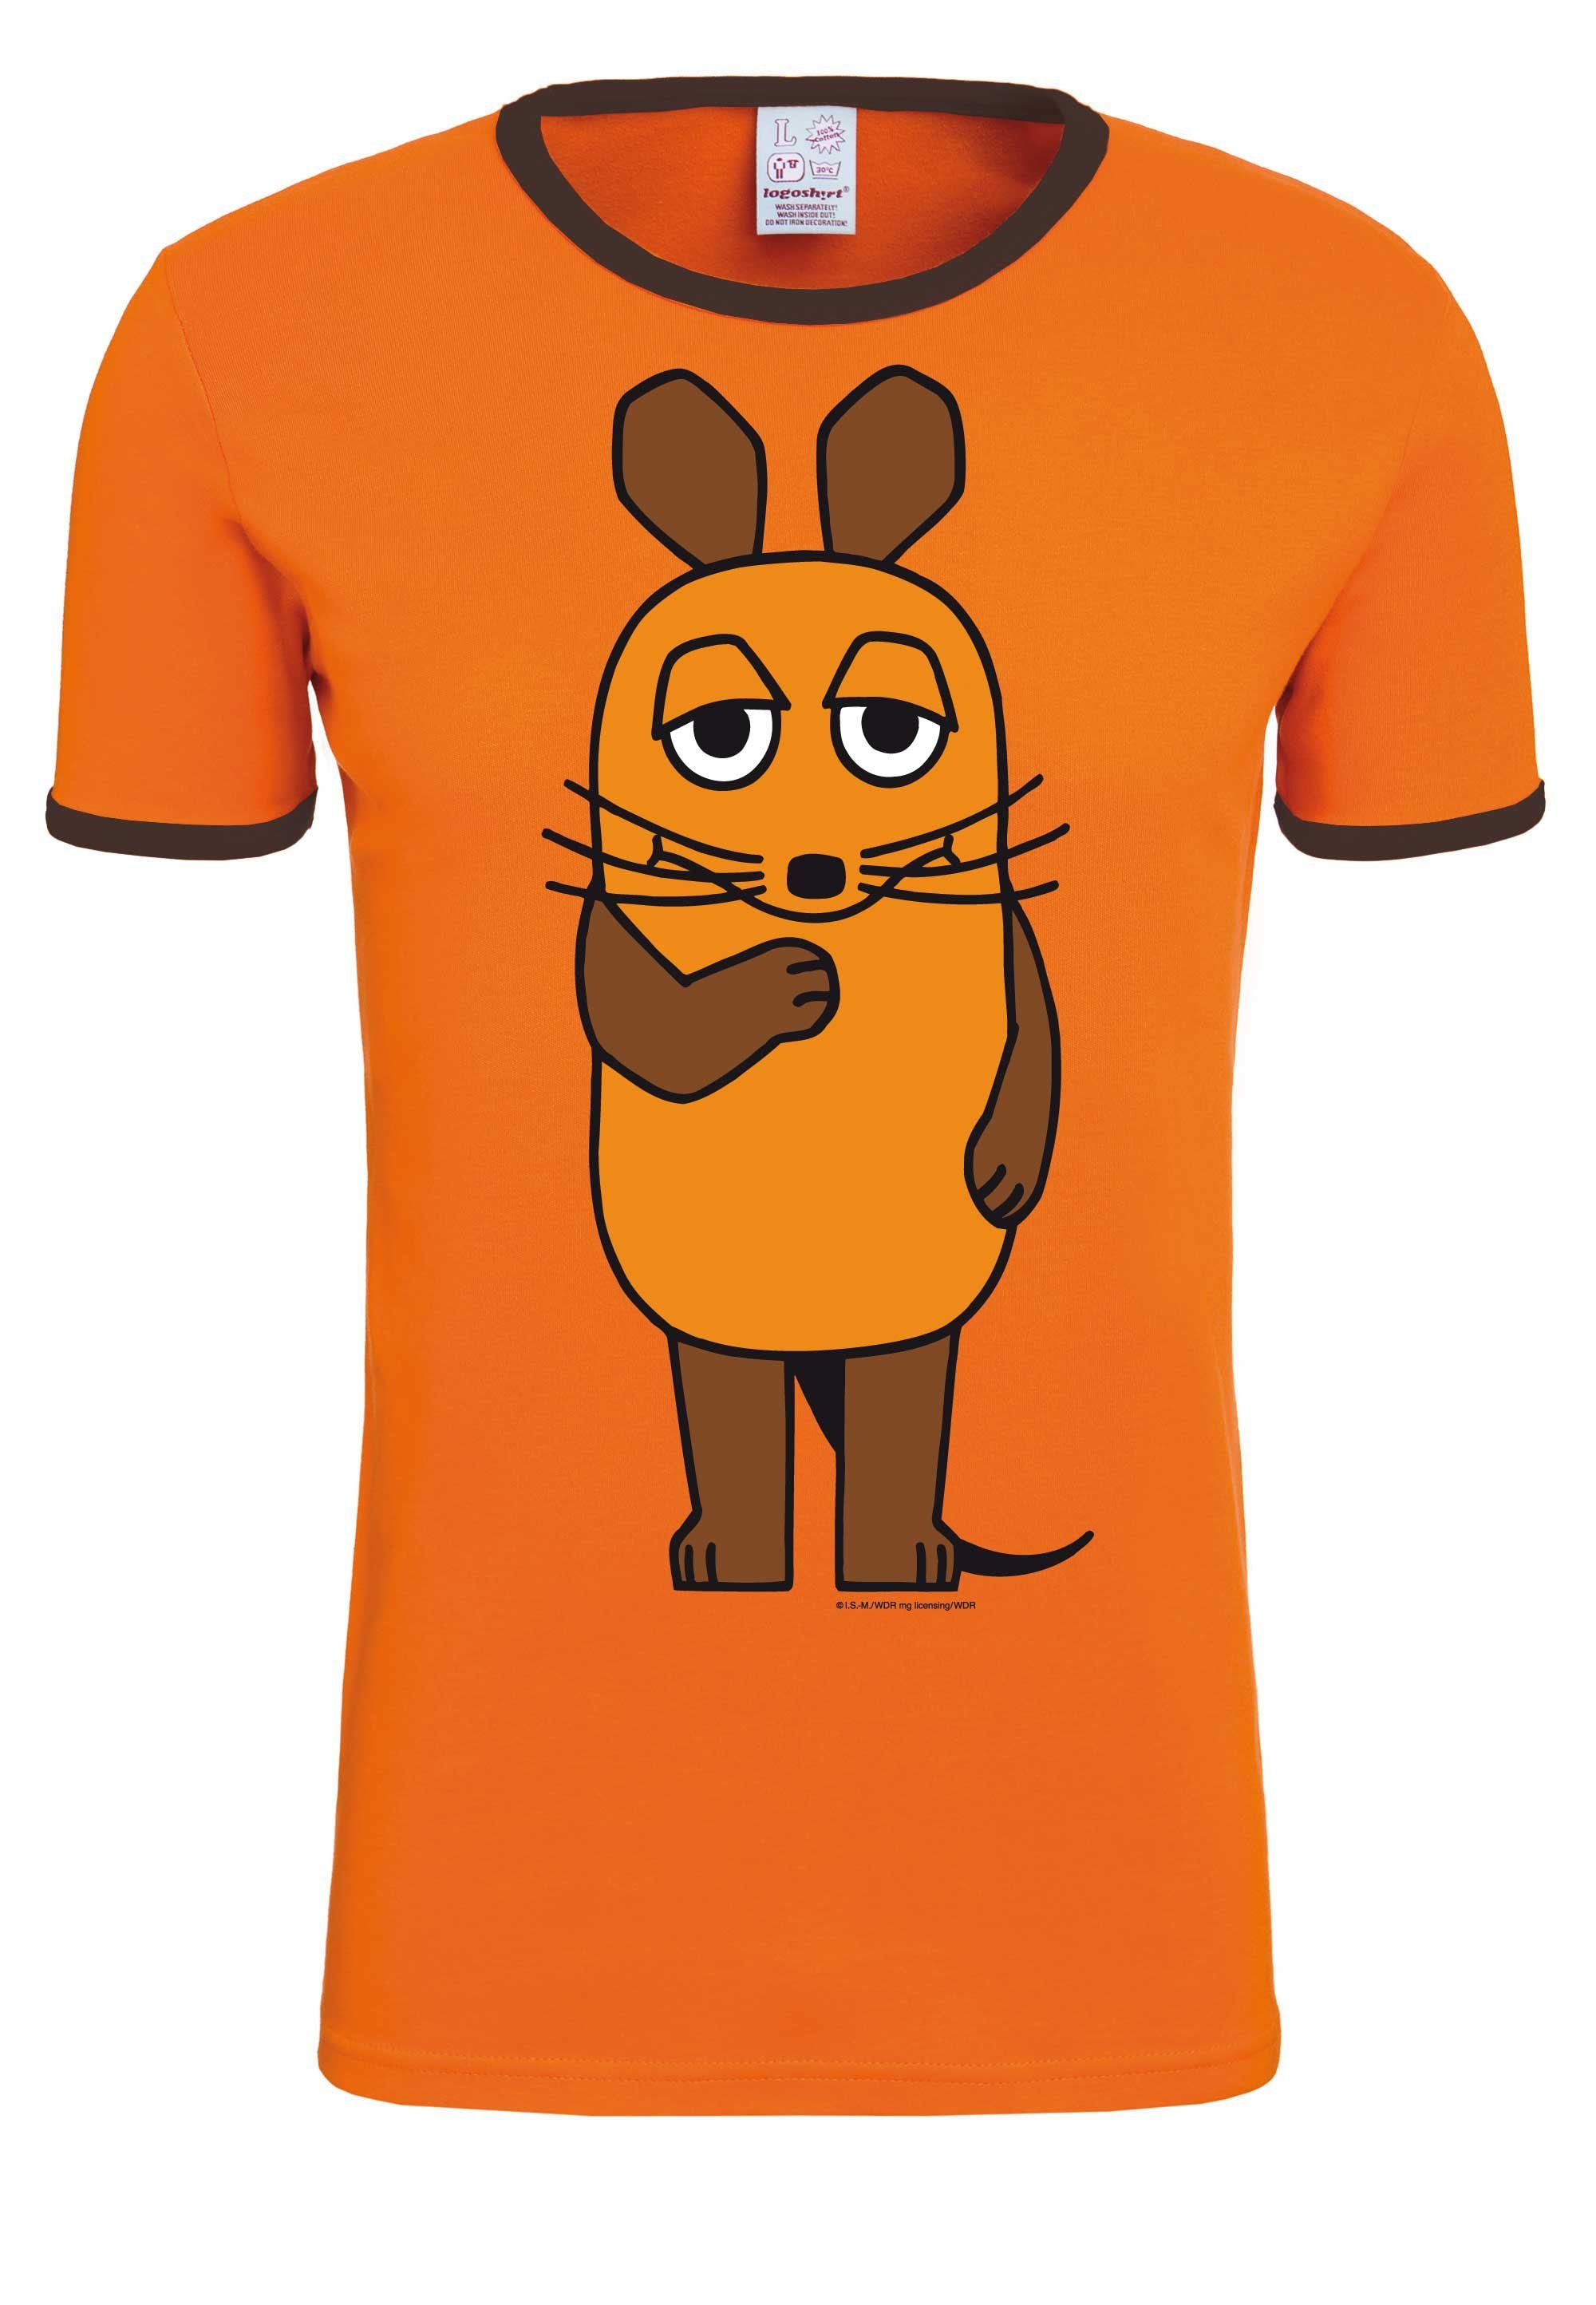 Die Print Die Sendung mit orange-dunkelbraun lizenziertem Maus mit Maus LOGOSHIRT - der T-Shirt